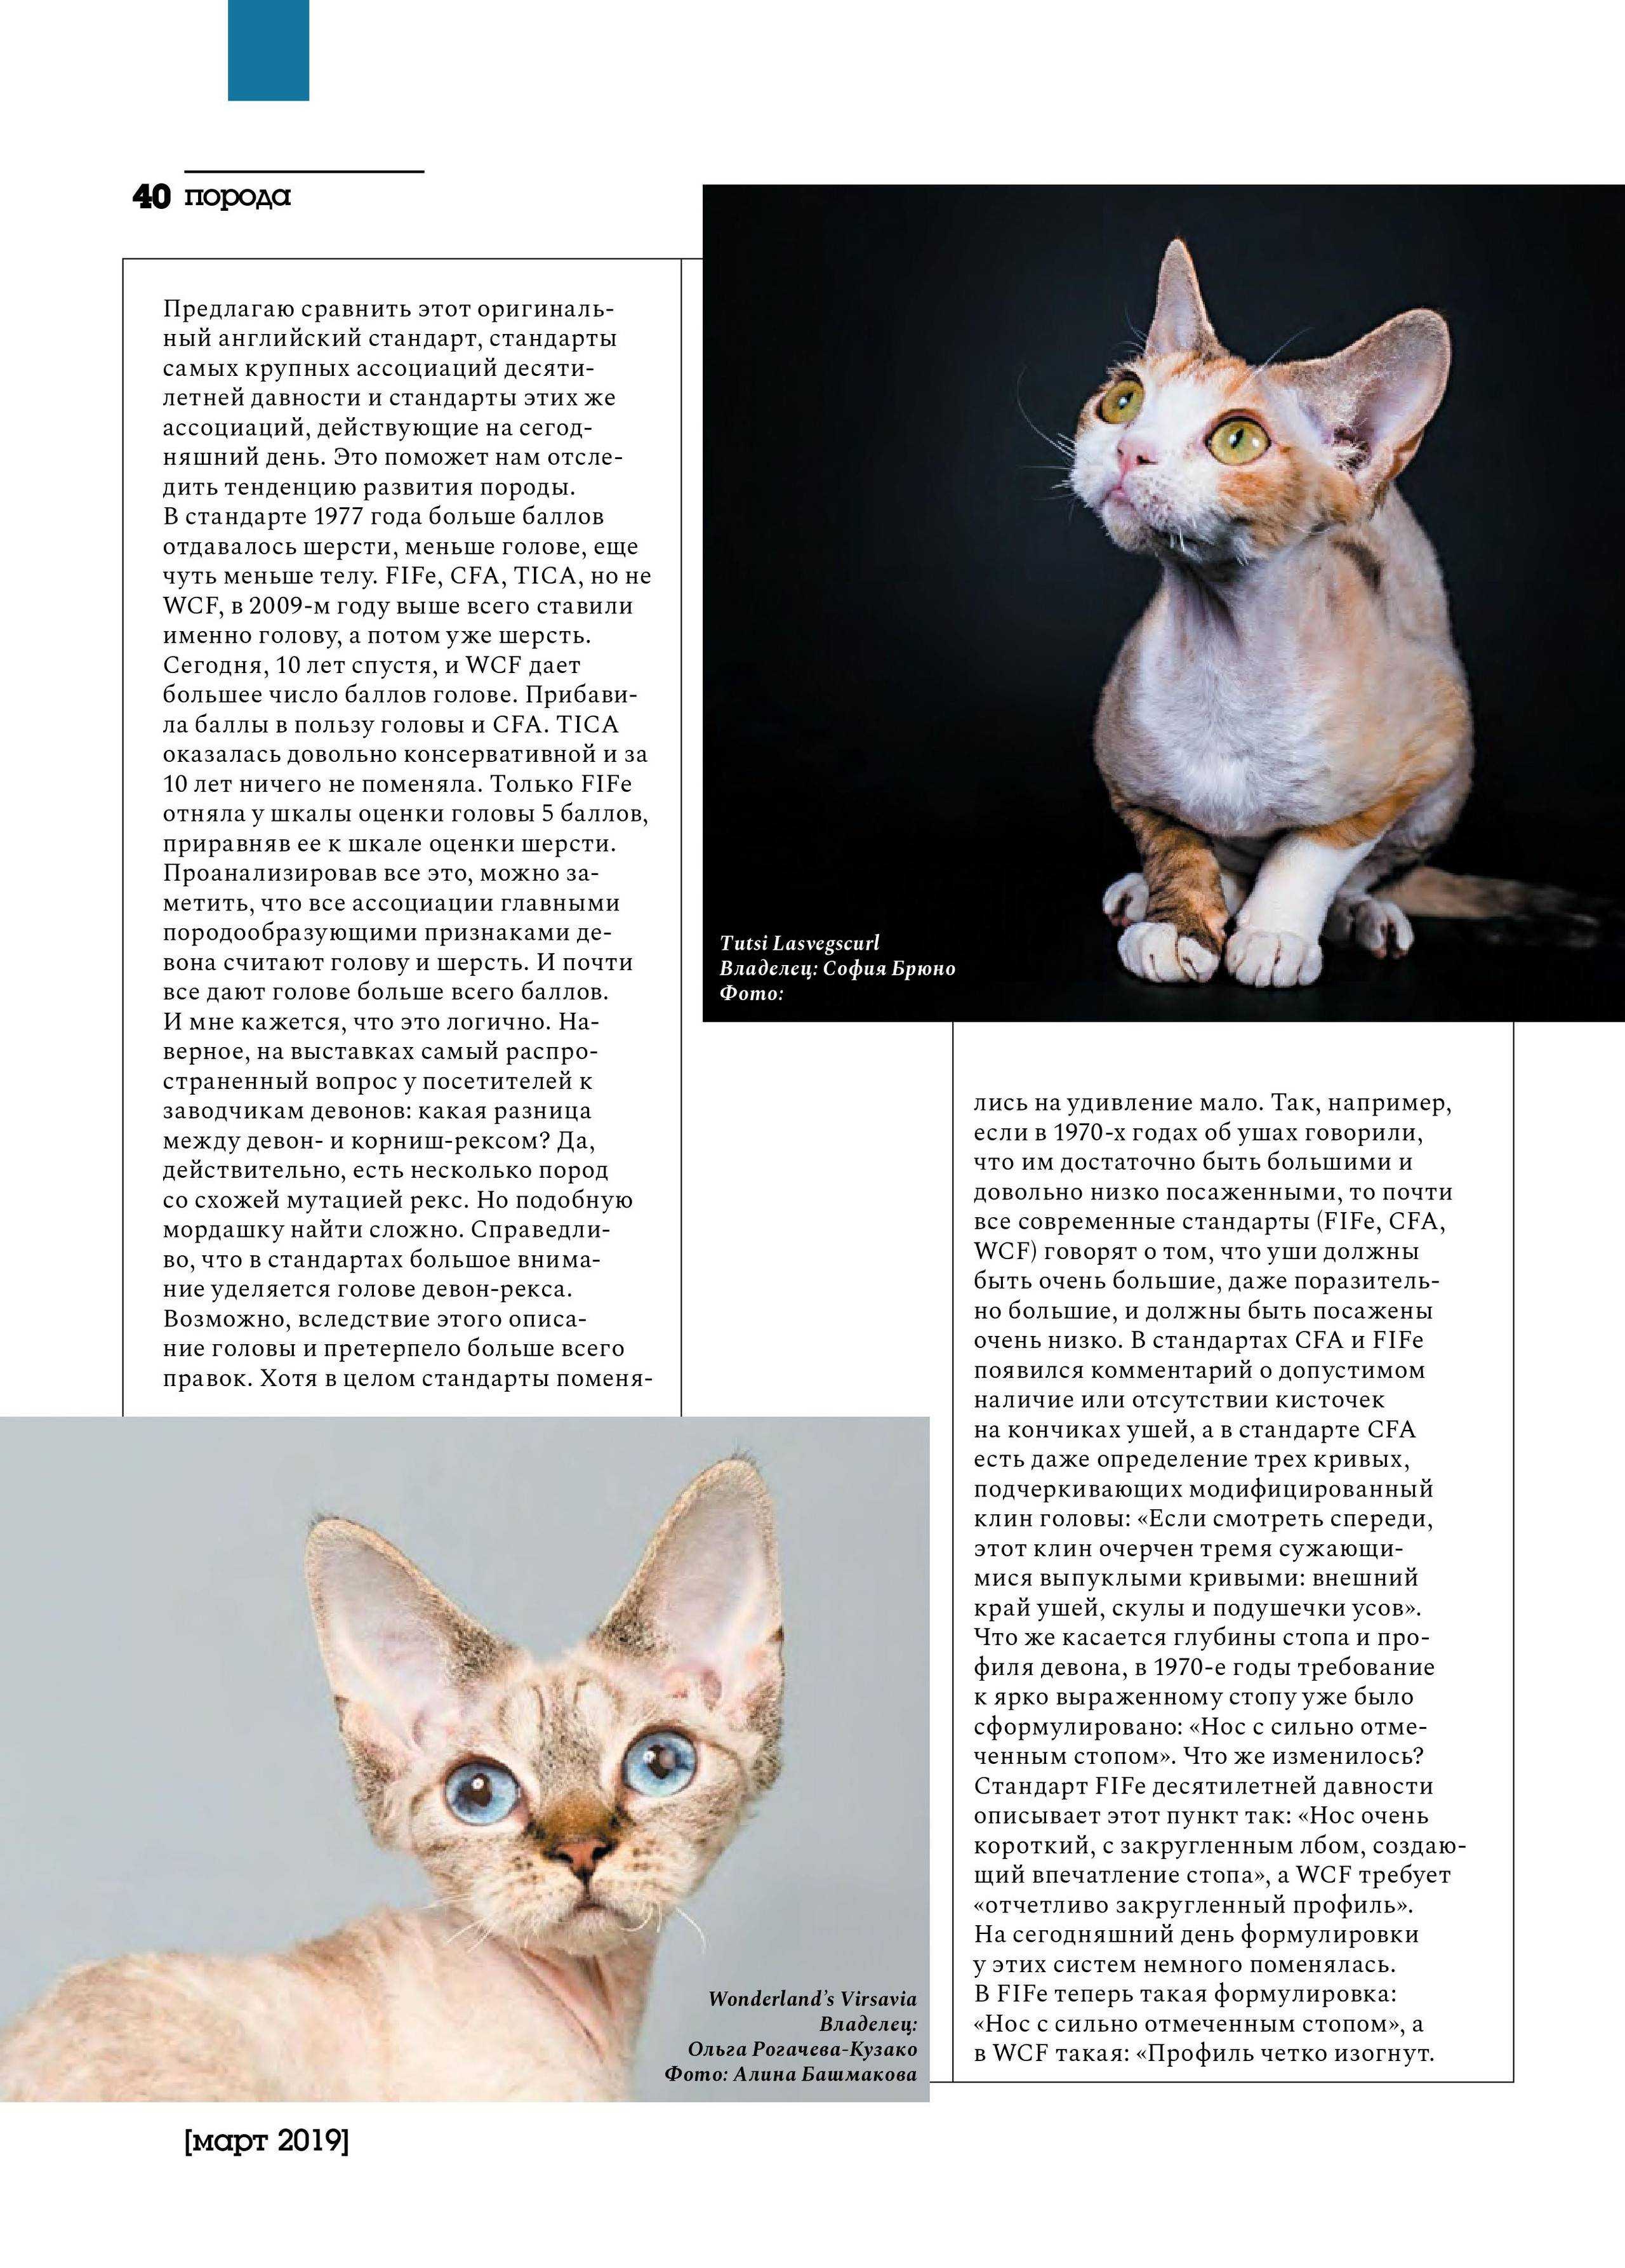 Кошки породы уральский рекс: описание, характер, советы по содержанию и уходу, фото